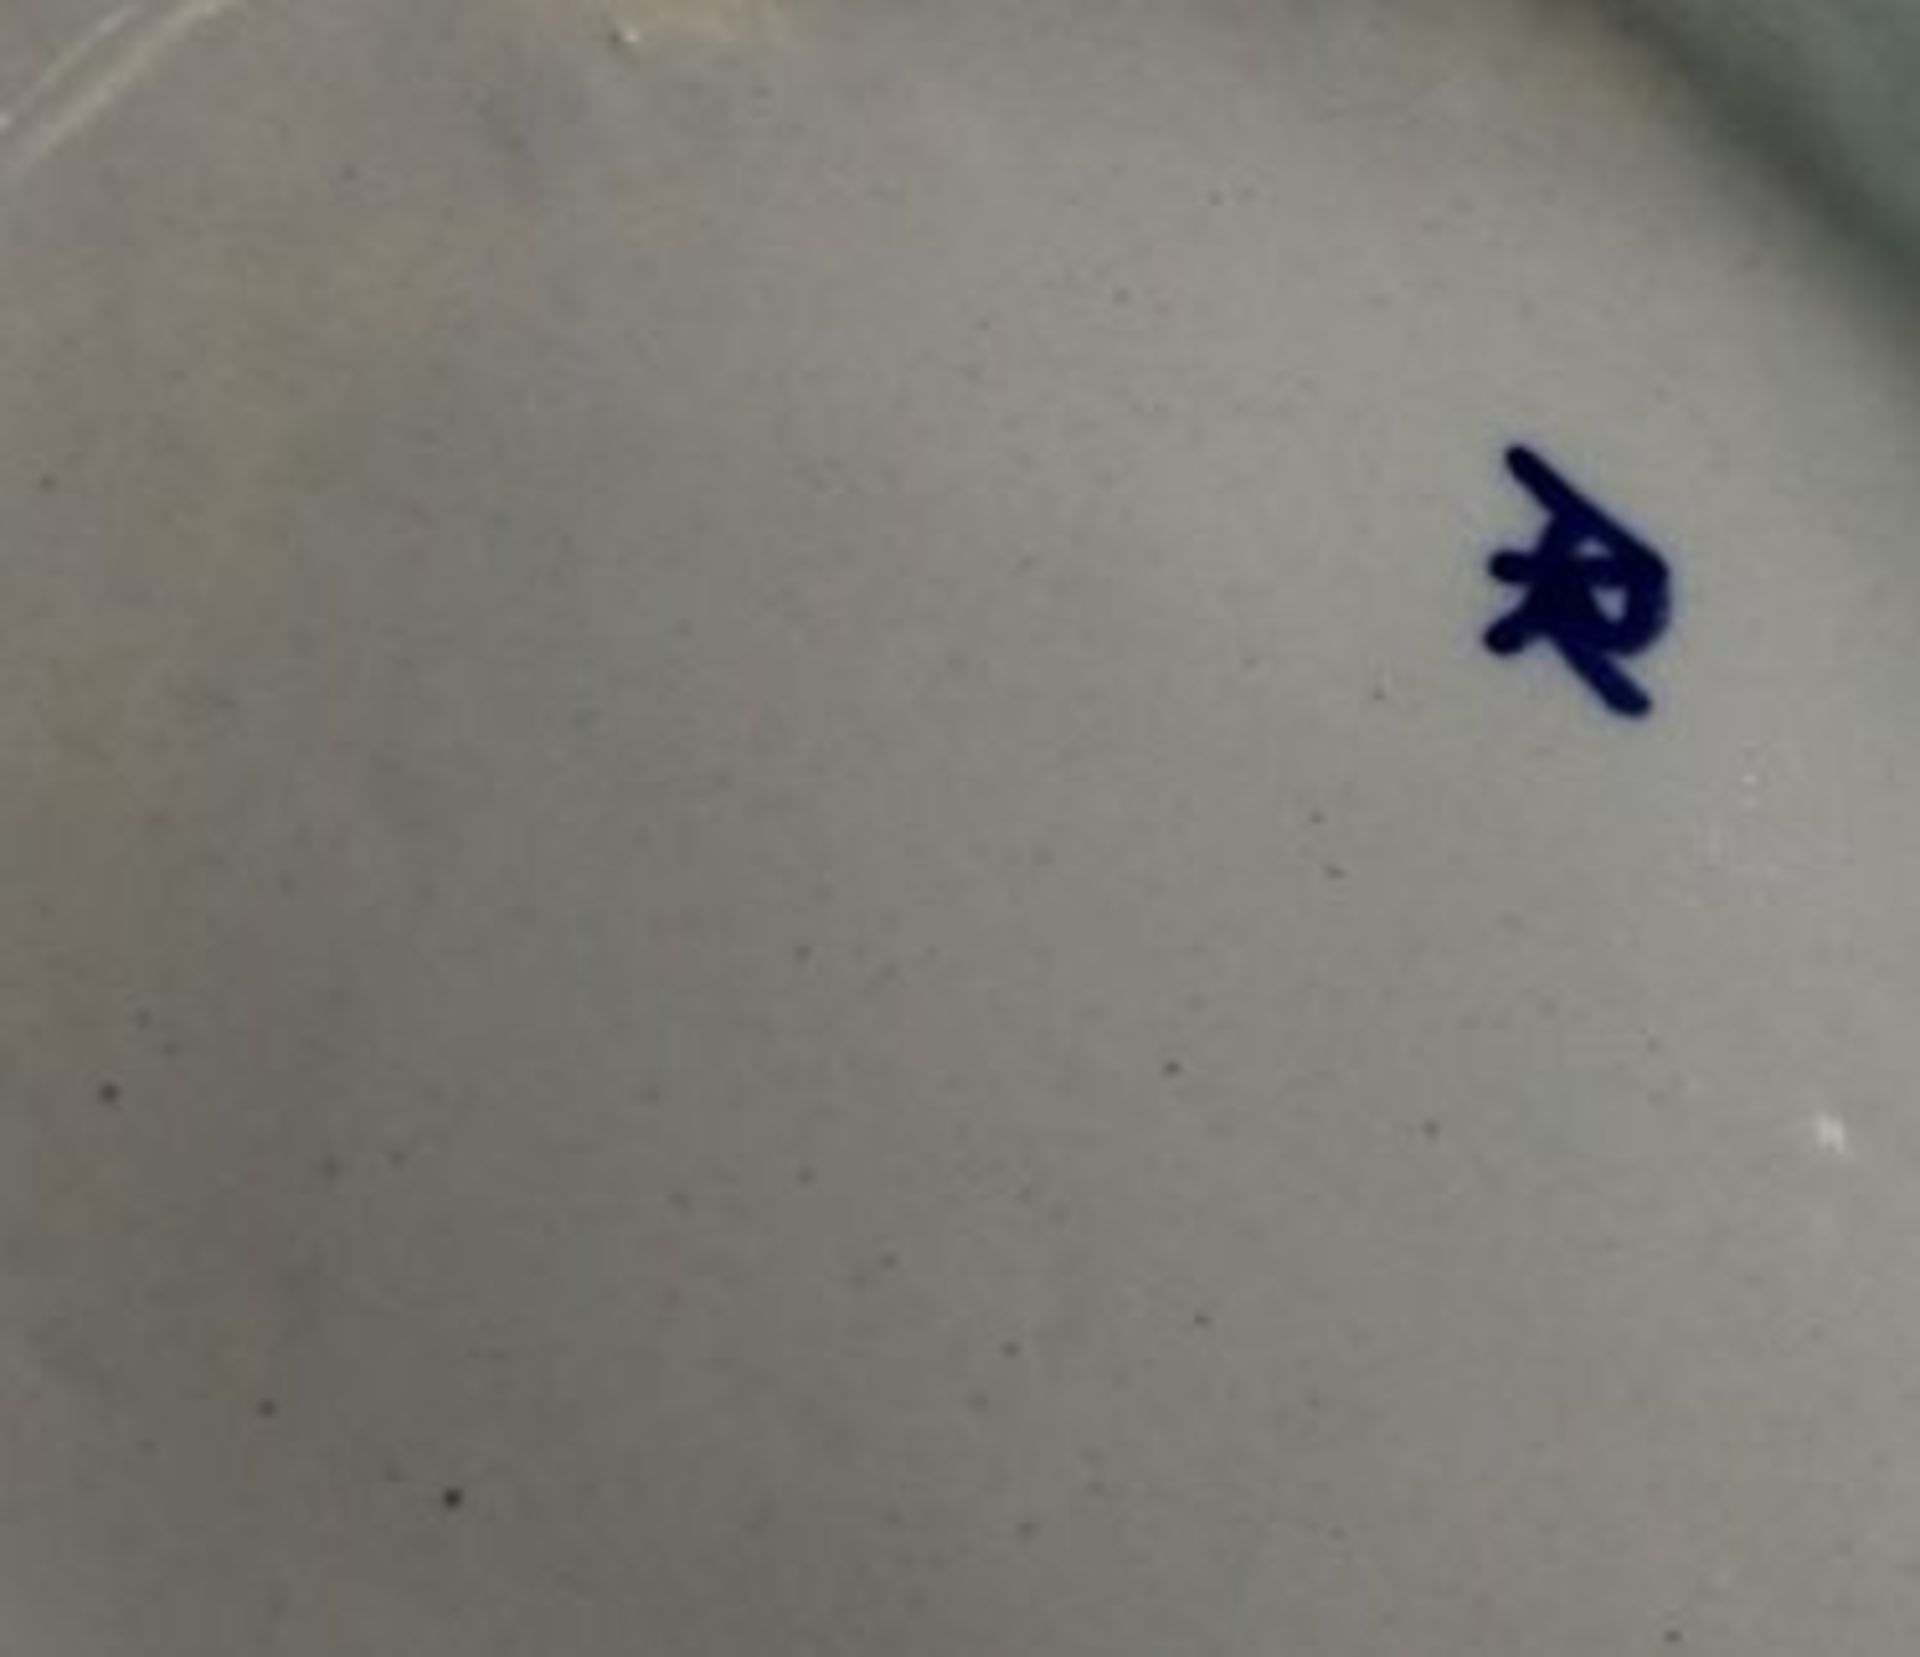 Deckelvase mit Blaumalerei, wohl Niederlande, Malerzeichen, H-35cm. - Bild 2 aus 2